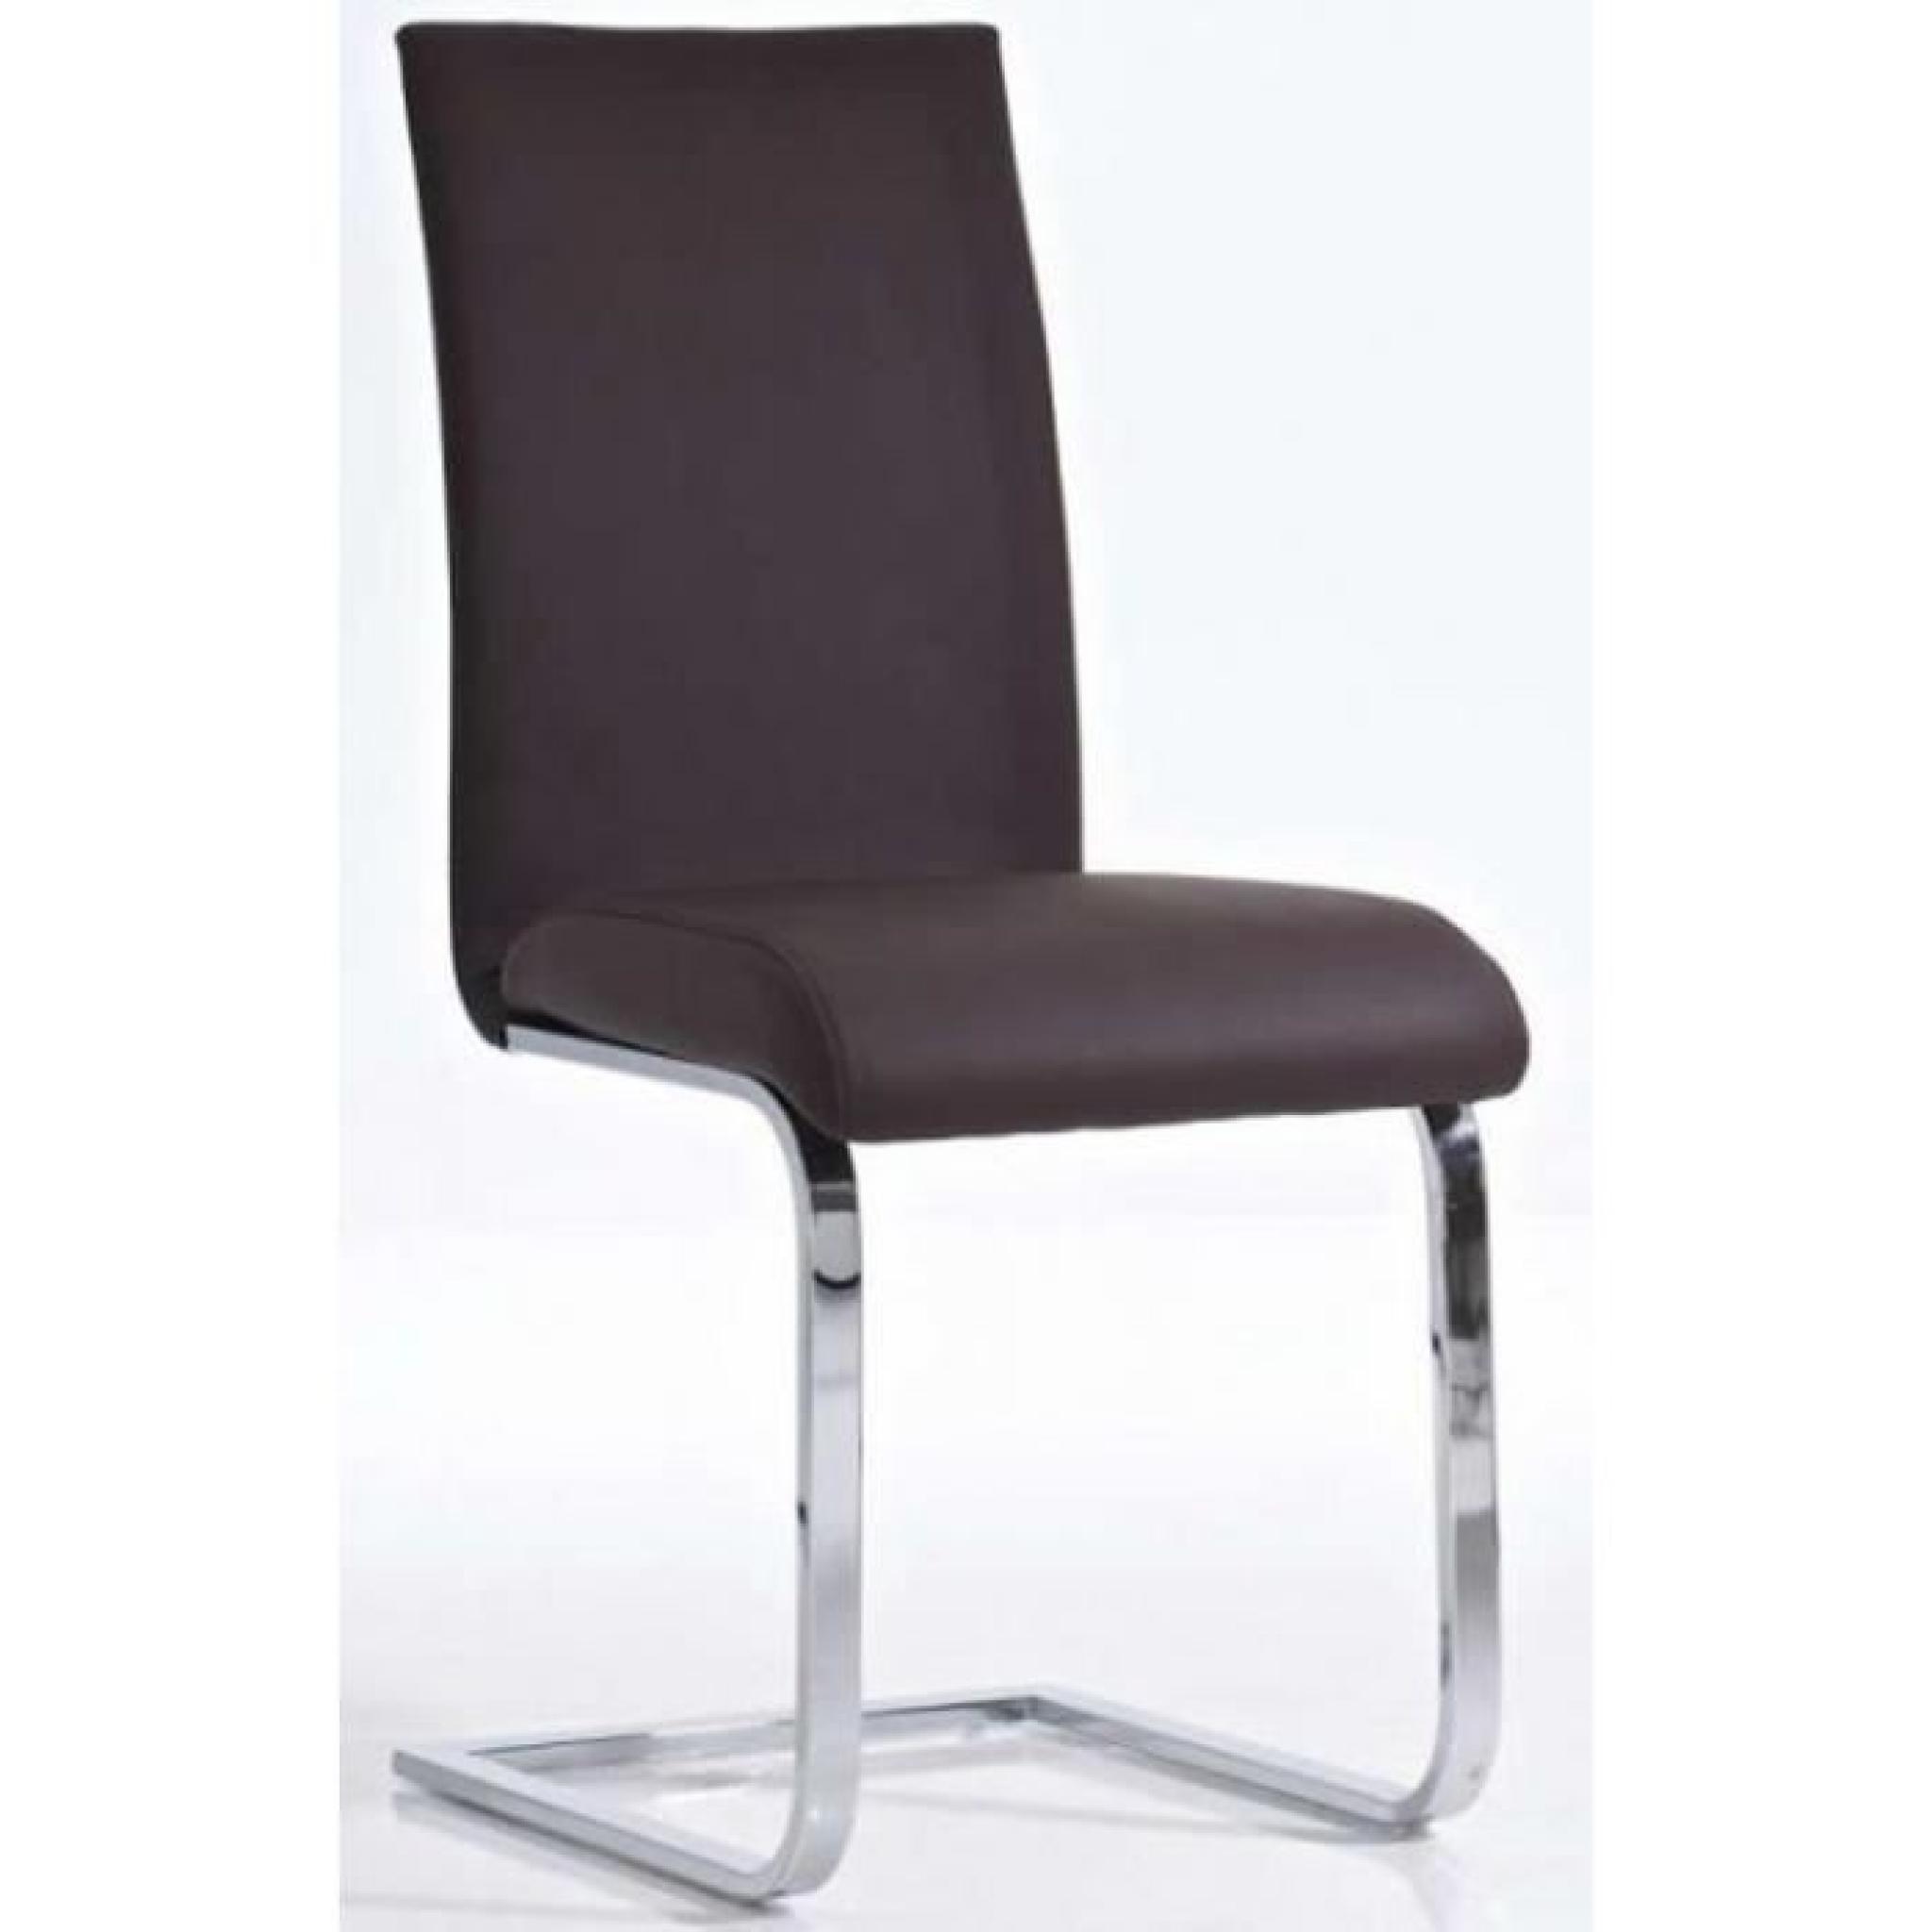 Chaise de salle à manger cantilever en similicuir coloris brun, Dim: H95 x L43 x P52 cm